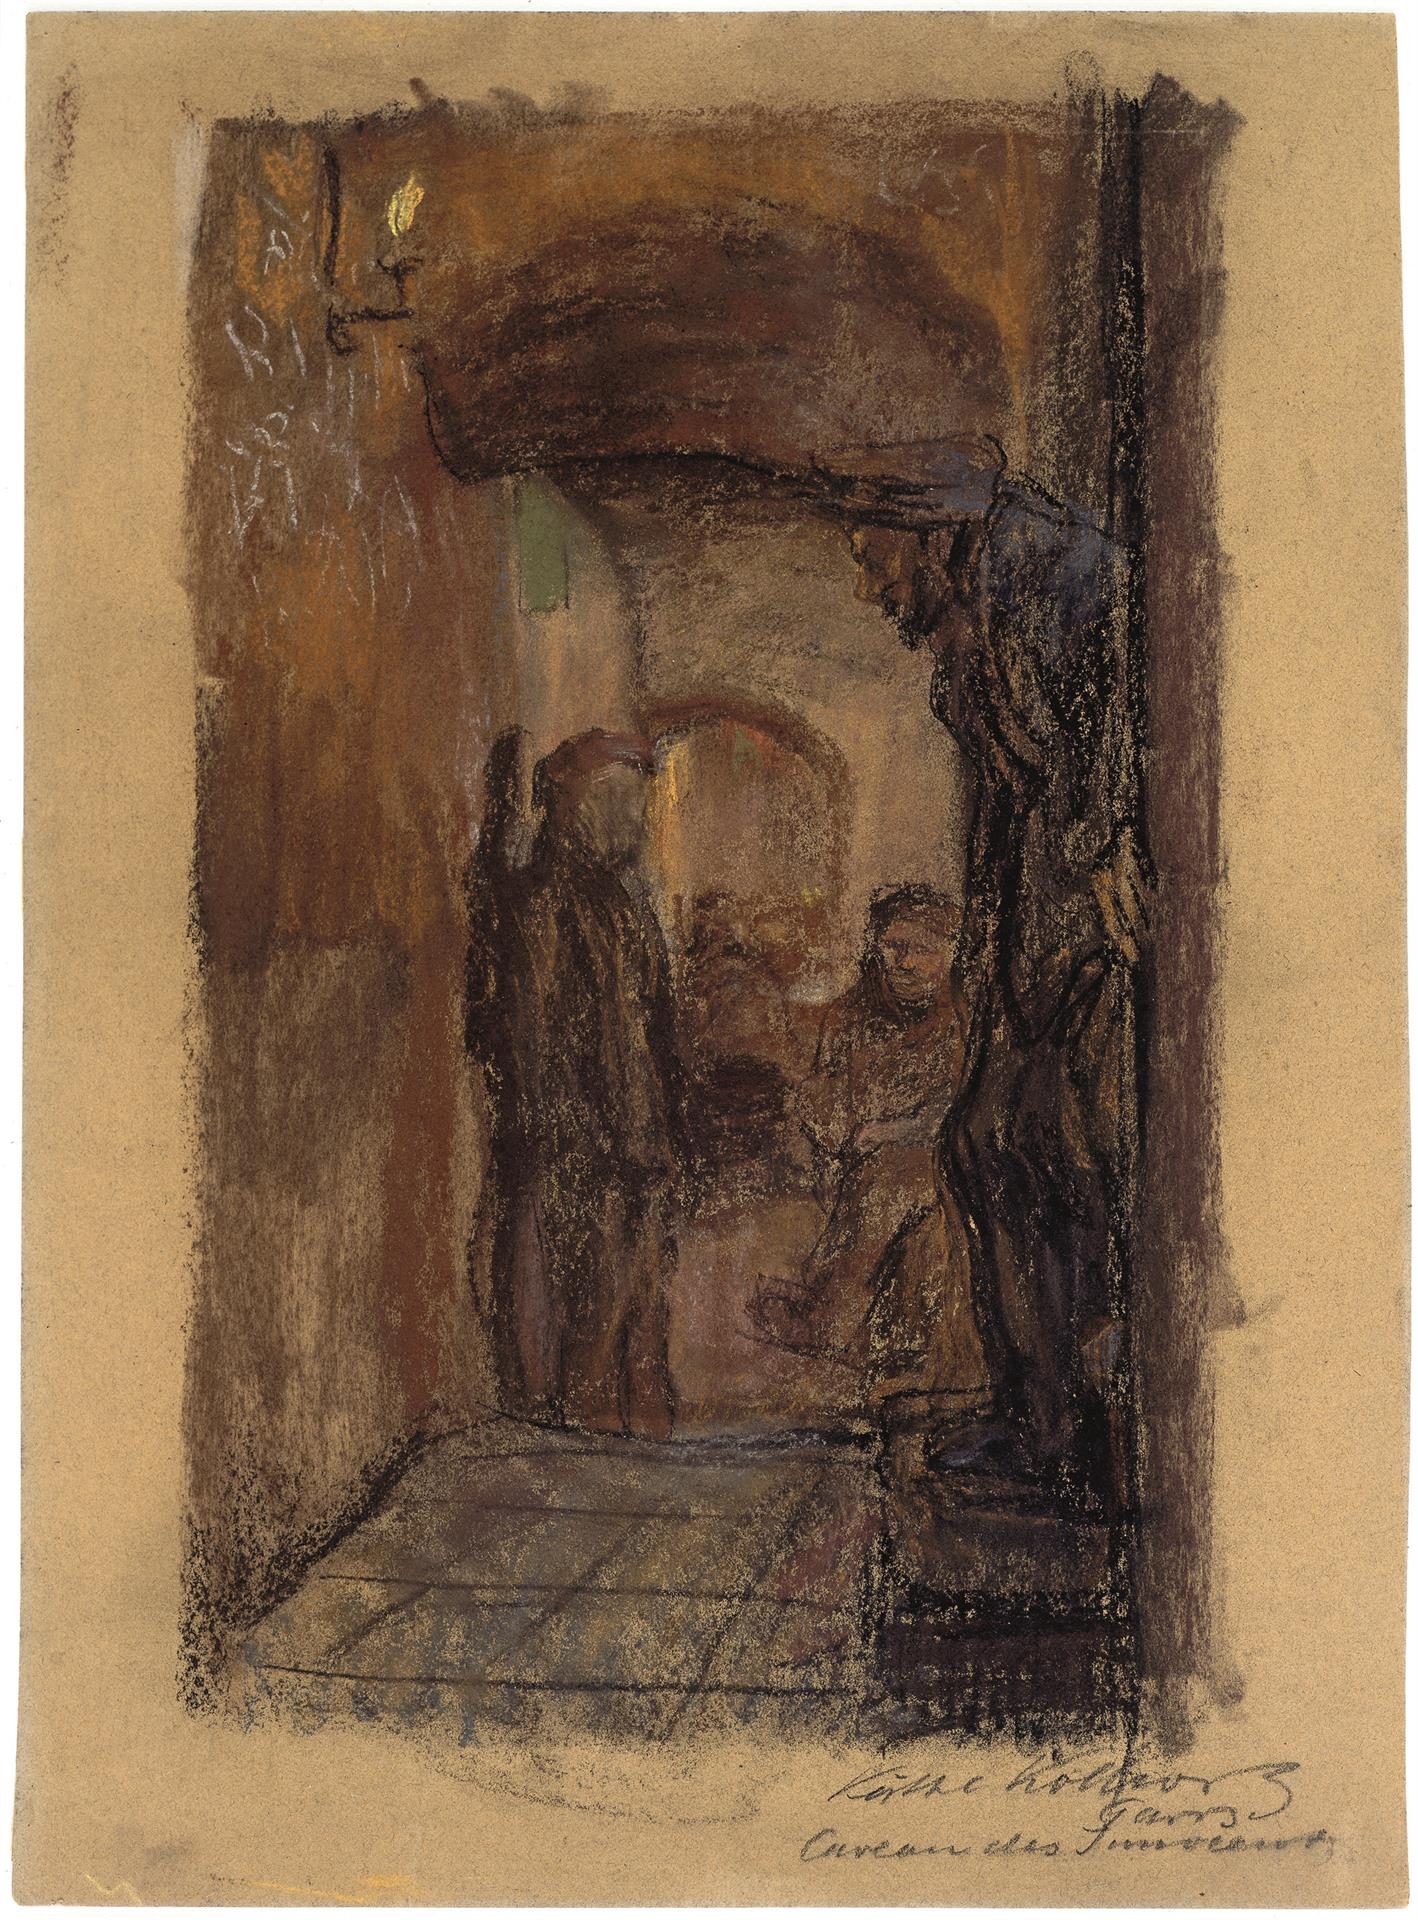 Käthe Kollwitz, Caveau des Innocents, 1904, Farbige Kreiden auf bräunlichem Karton, NT 275